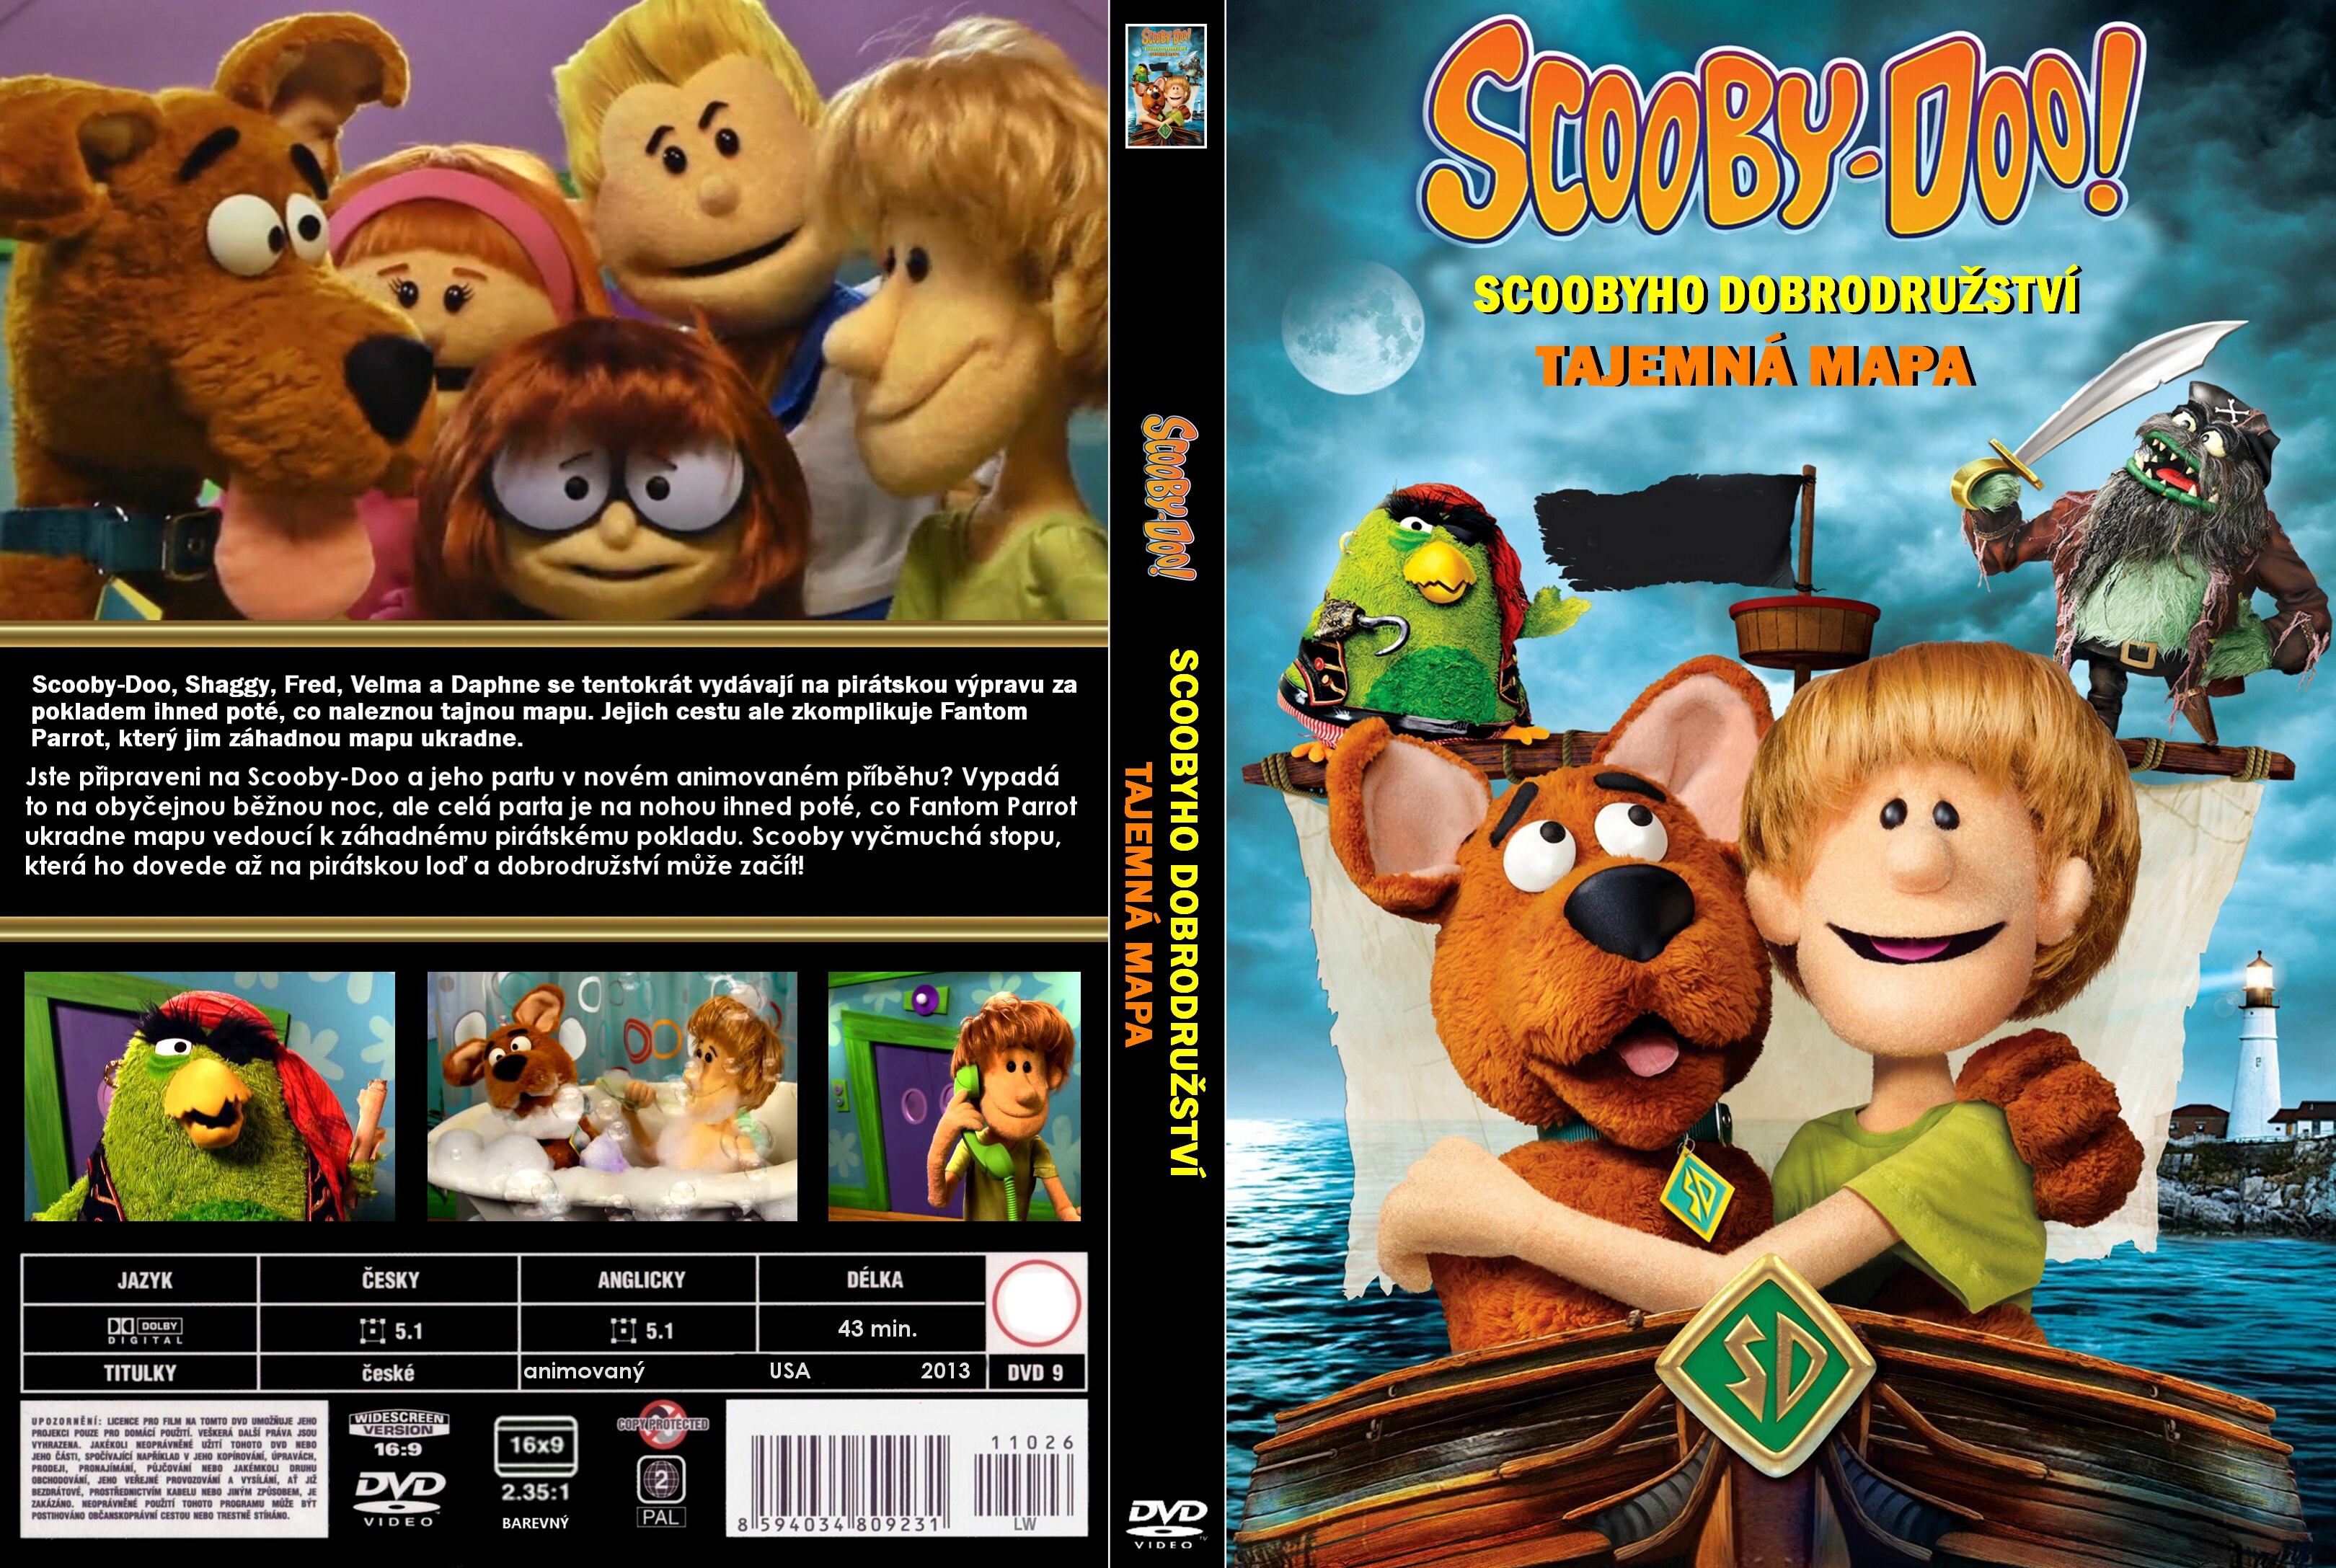 Scoobyho_Dobrodruzstvi-Tajemna_Mapa-Cover-